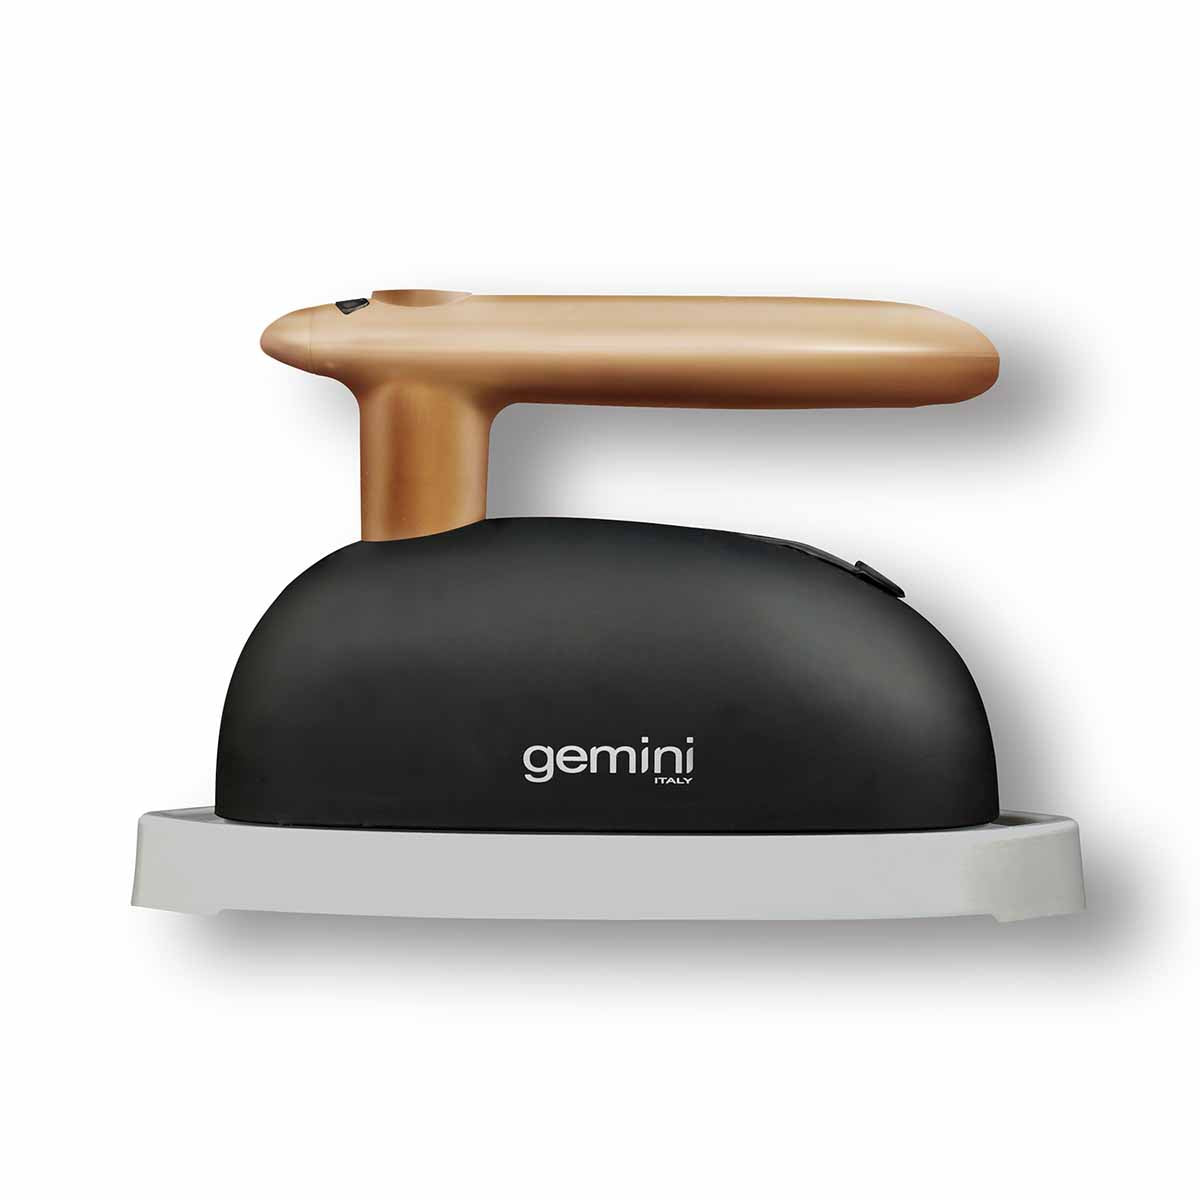 Gemini 兩用手提式蒸氣掛燙機 GGS180